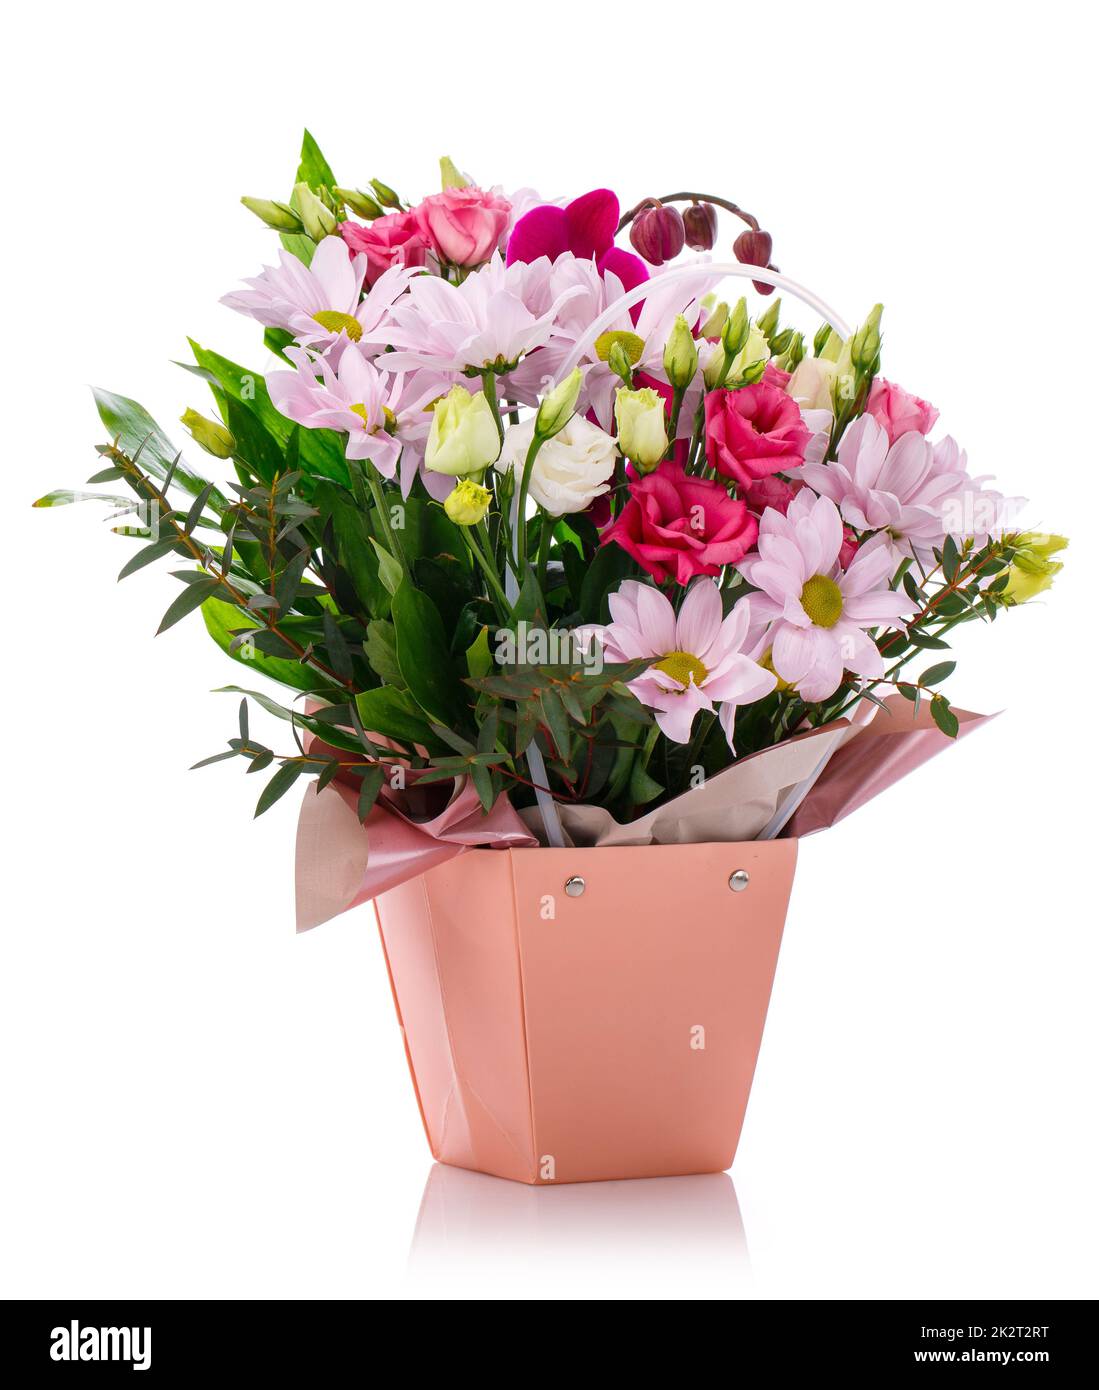 L'arrangement de grandes fleurs dans une boîte a été créé par un fleuriste pour un cadeau de mariage. Banque D'Images